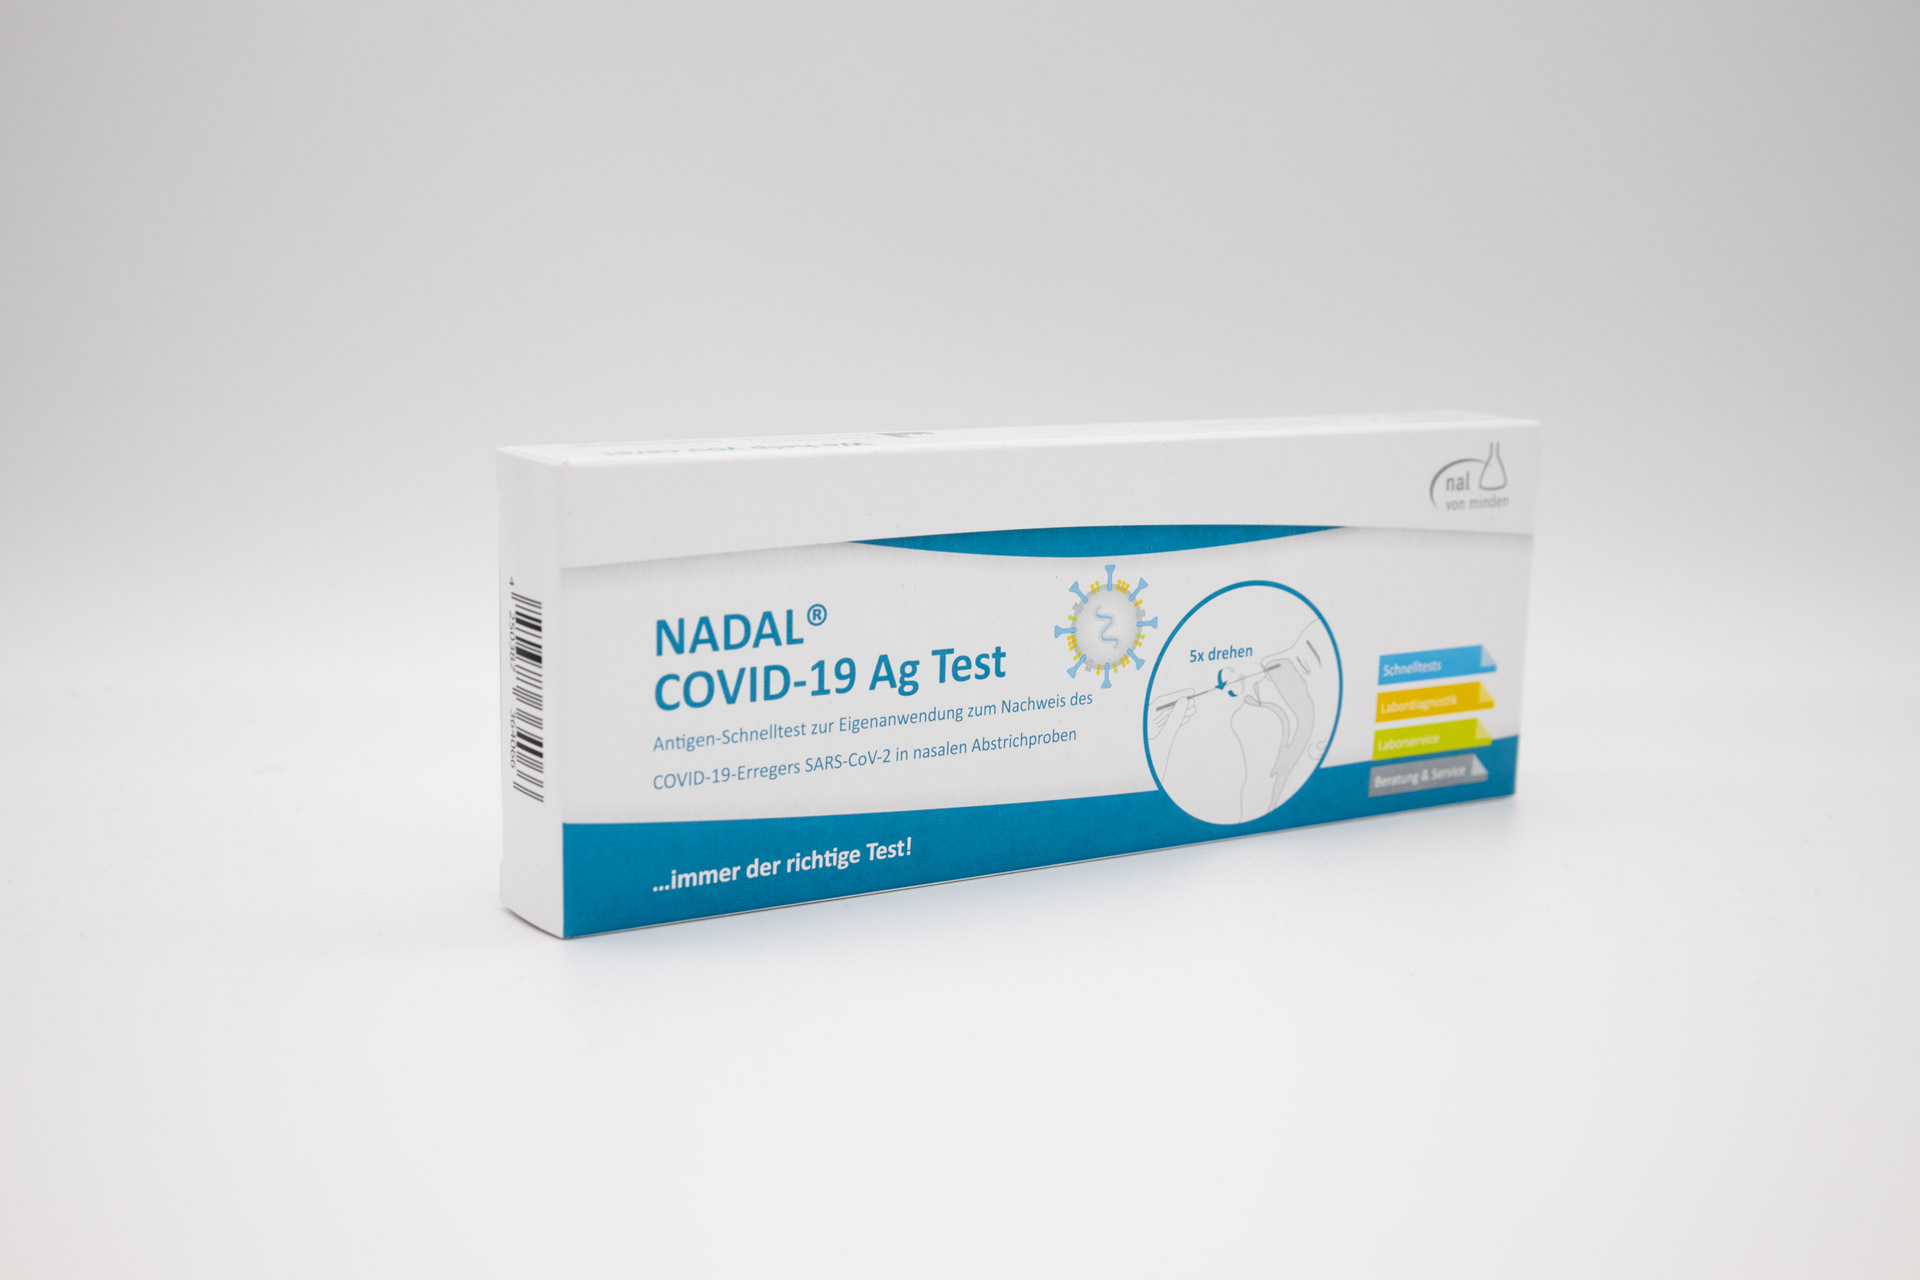 NADAL® COVID-19 Ag Test 5er Box